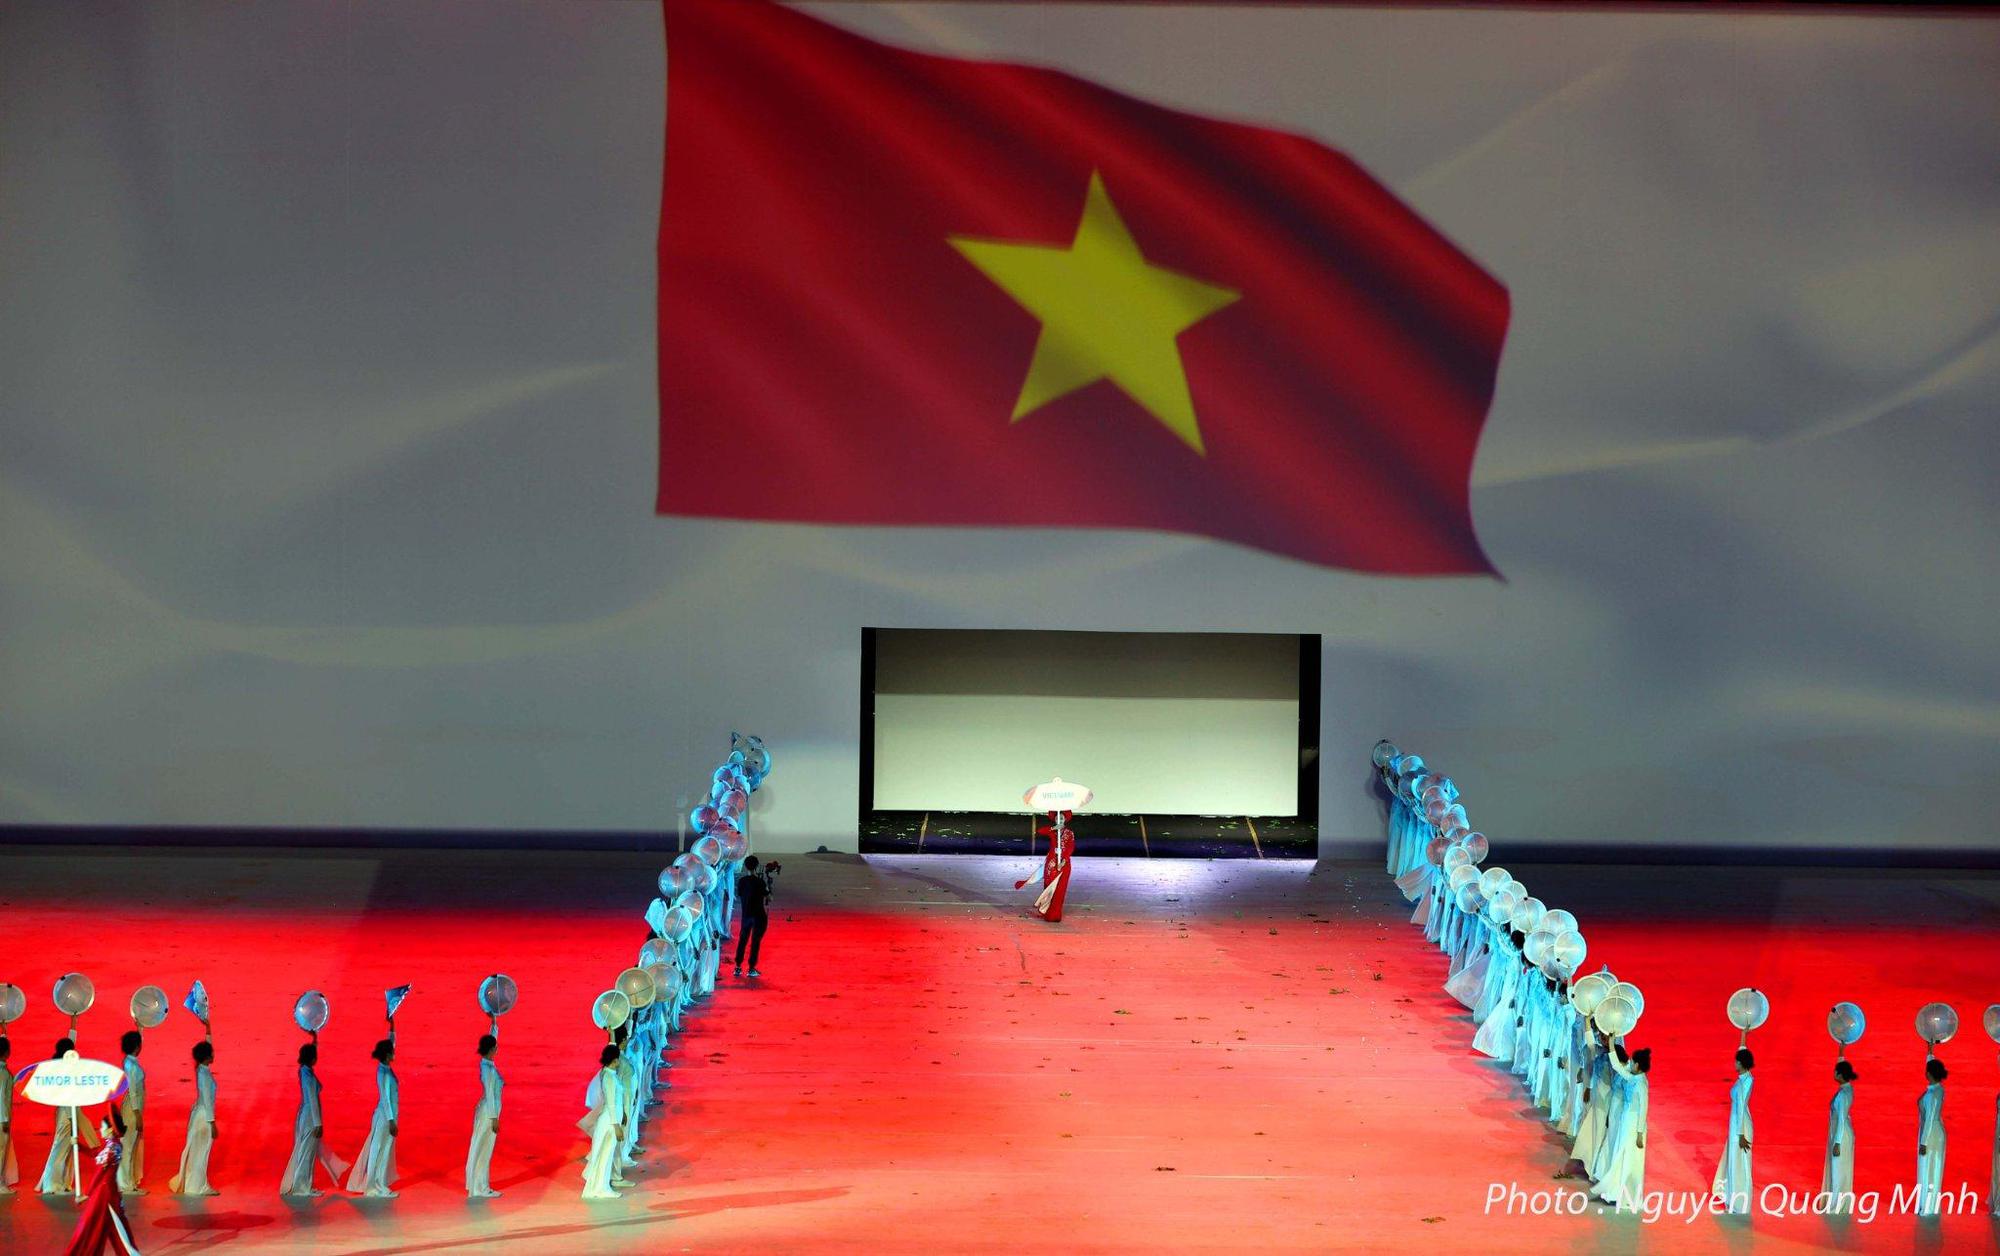 TRỰC TIẾP Lễ khai mạc SEA Games 31: Vì một Đông Nam Á mạnh mẽ hơn - Ảnh 1.